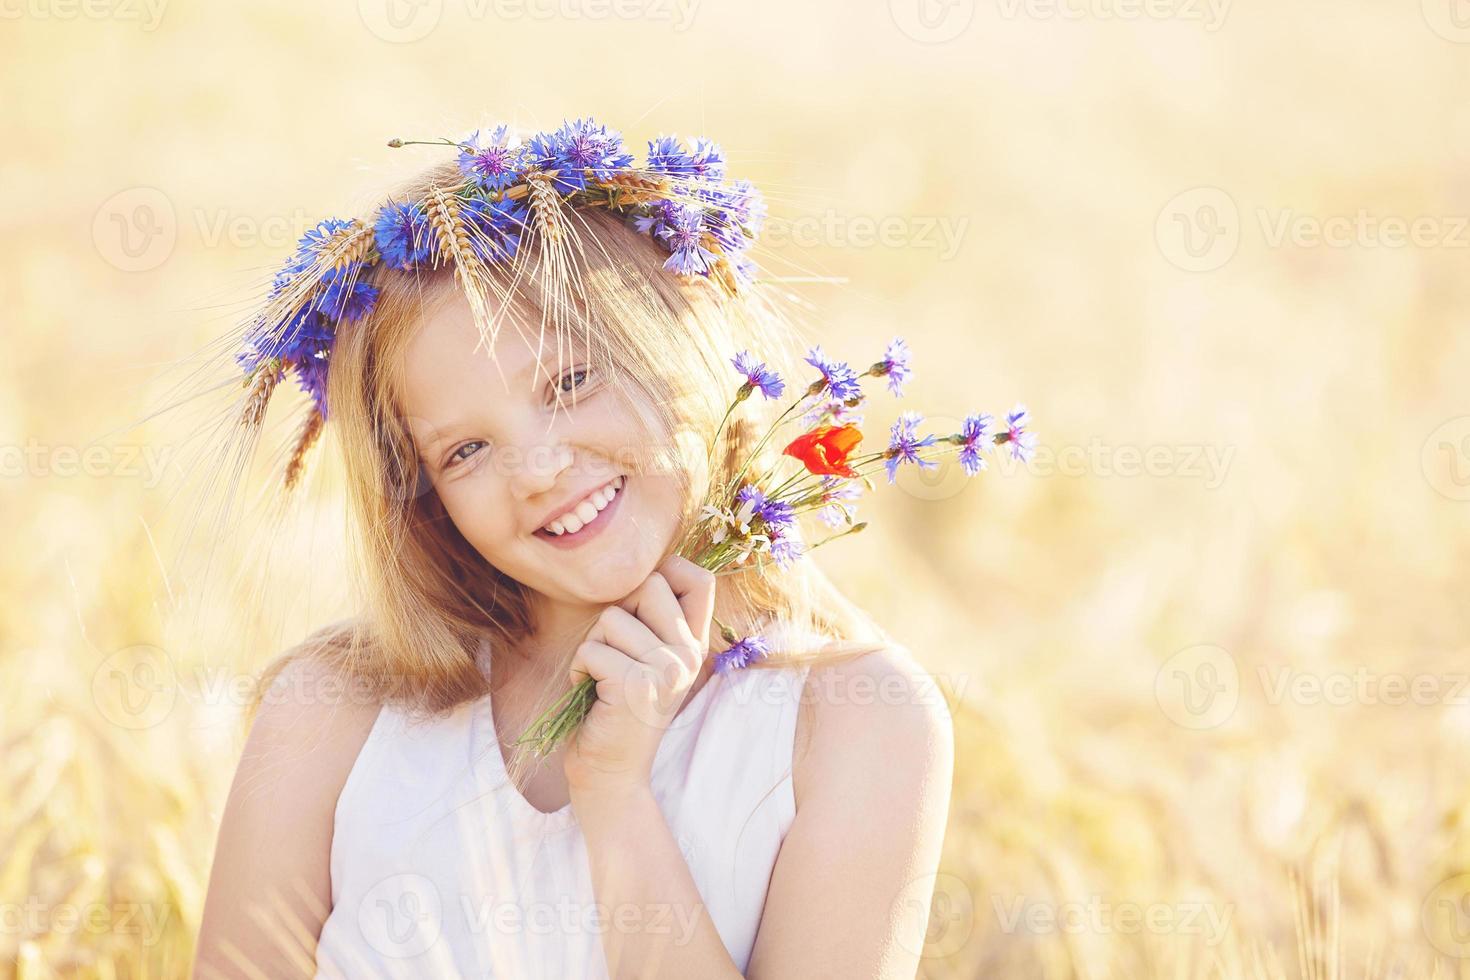 niña feliz con corona de flores en el campo de trigo de verano foto